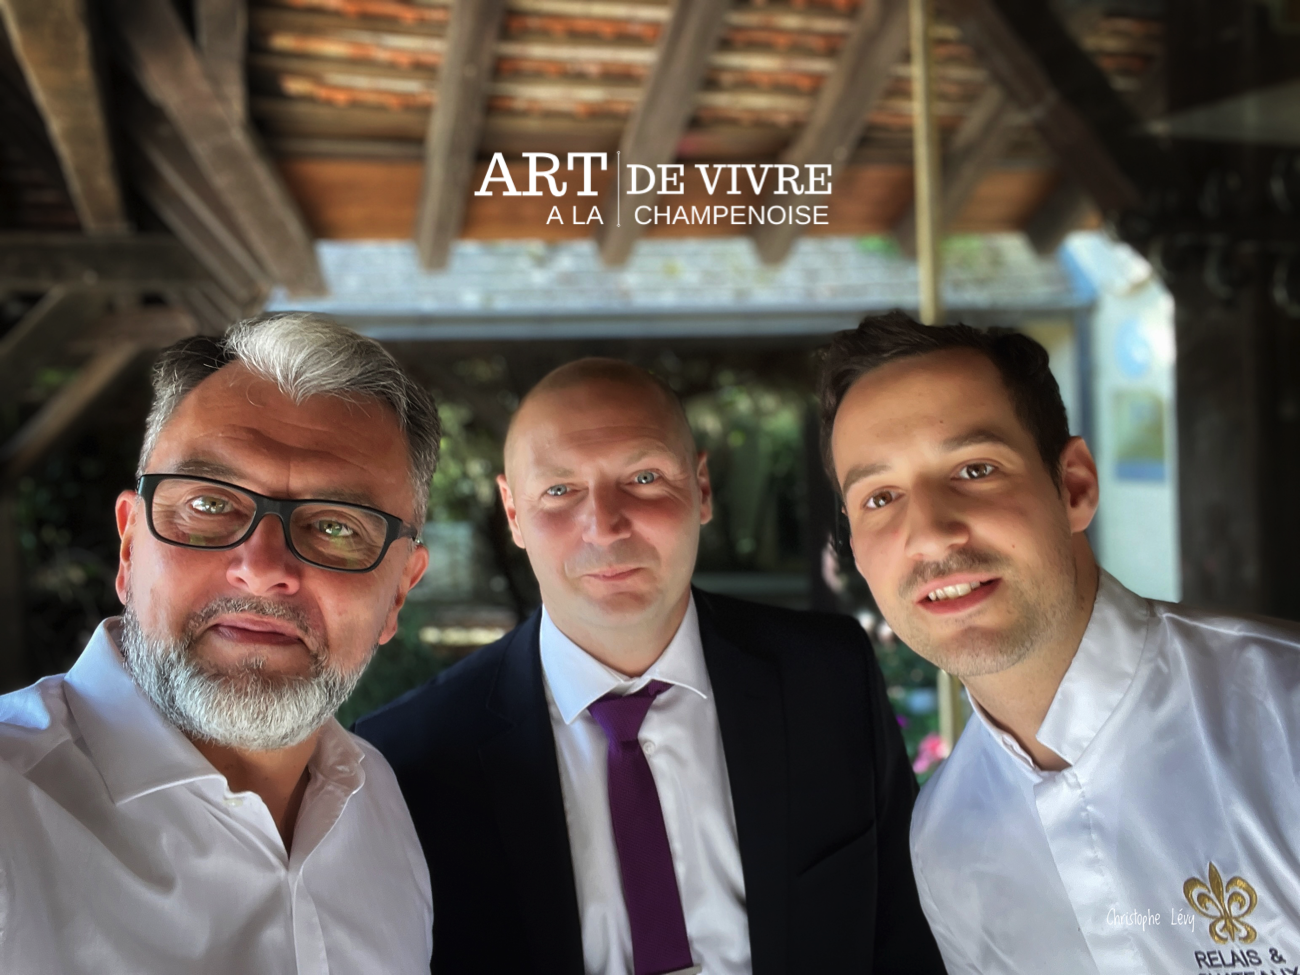 Vinay : L’hostellerie La Briqueterie – Relais & Chateaux, rencontre avec Maxence Varlet (Directeur) et Benjamin Andreux (Chef)